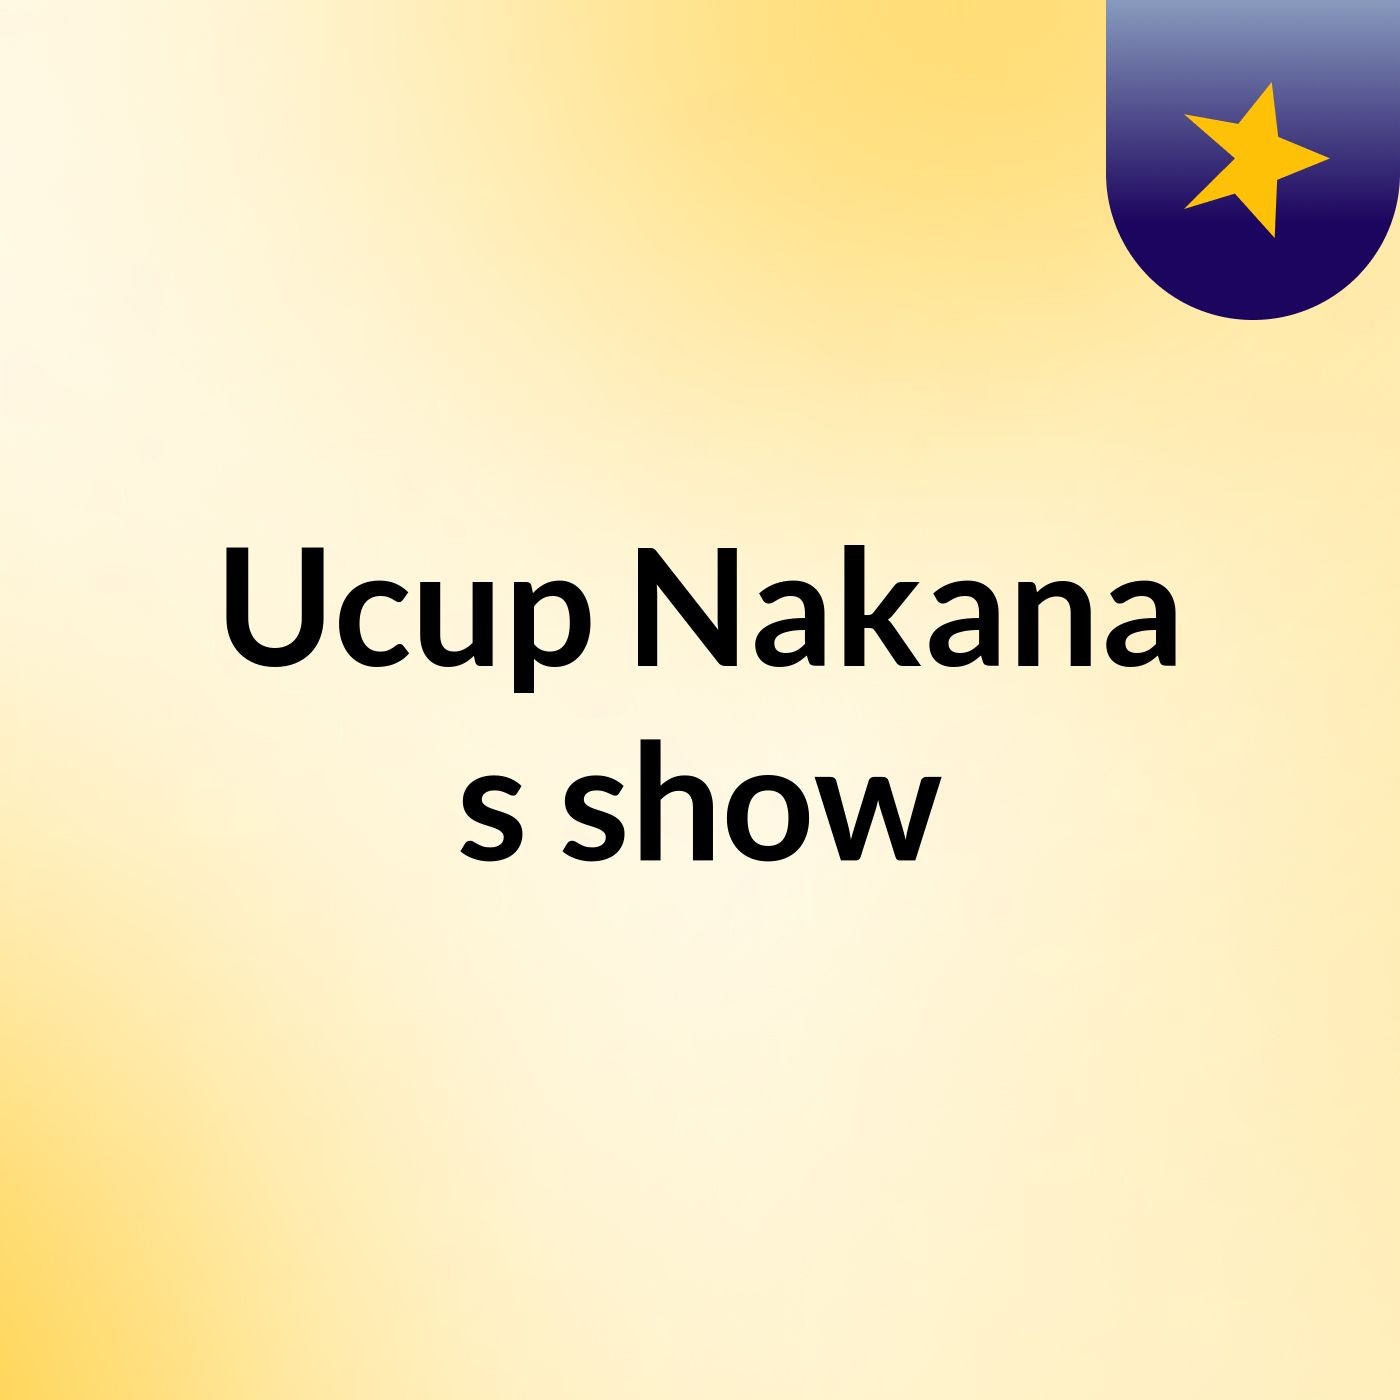 Ucup Nakana's show